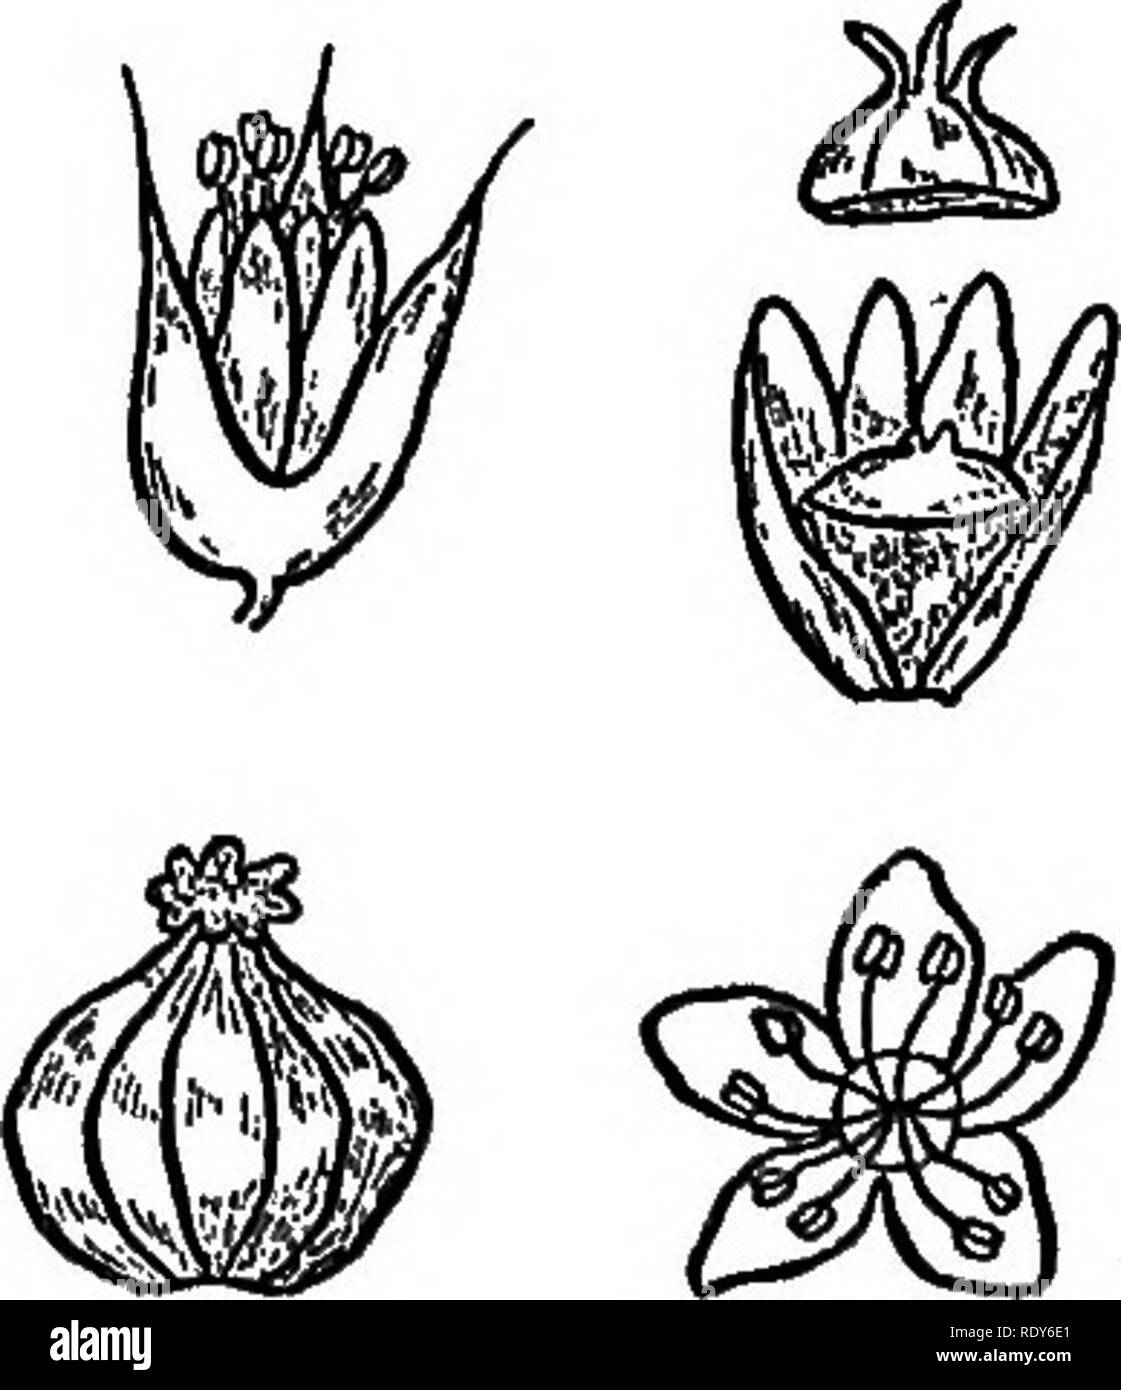 . Le famiglie di piante in fiore. Piante; fanerogame. Fig. 76. Fioritura brauch di grano saraceno {^Fagopyriim Fagopy- rum), con fiore allargata e frutta. Originale. figli, è il prodotto di Fagopyrum Fagopyrum, un membro di questa famiglia, illustrata in Fig. 76. La pianta era originariamente un nativo di Asia, è cresciuto estesamente in alcune parti degli Stati Uniti e sul continente europeo, dove si è sfuggito frequentemente e diventare estal^- fissate in un semi-stato selvaggio. Farina di grano saraceno, sebbene meno nutritivo di frumento, è notevolmente superiore in questo rispetto al riso. Un altro cibo polygonaceous-impianto Foto Stock